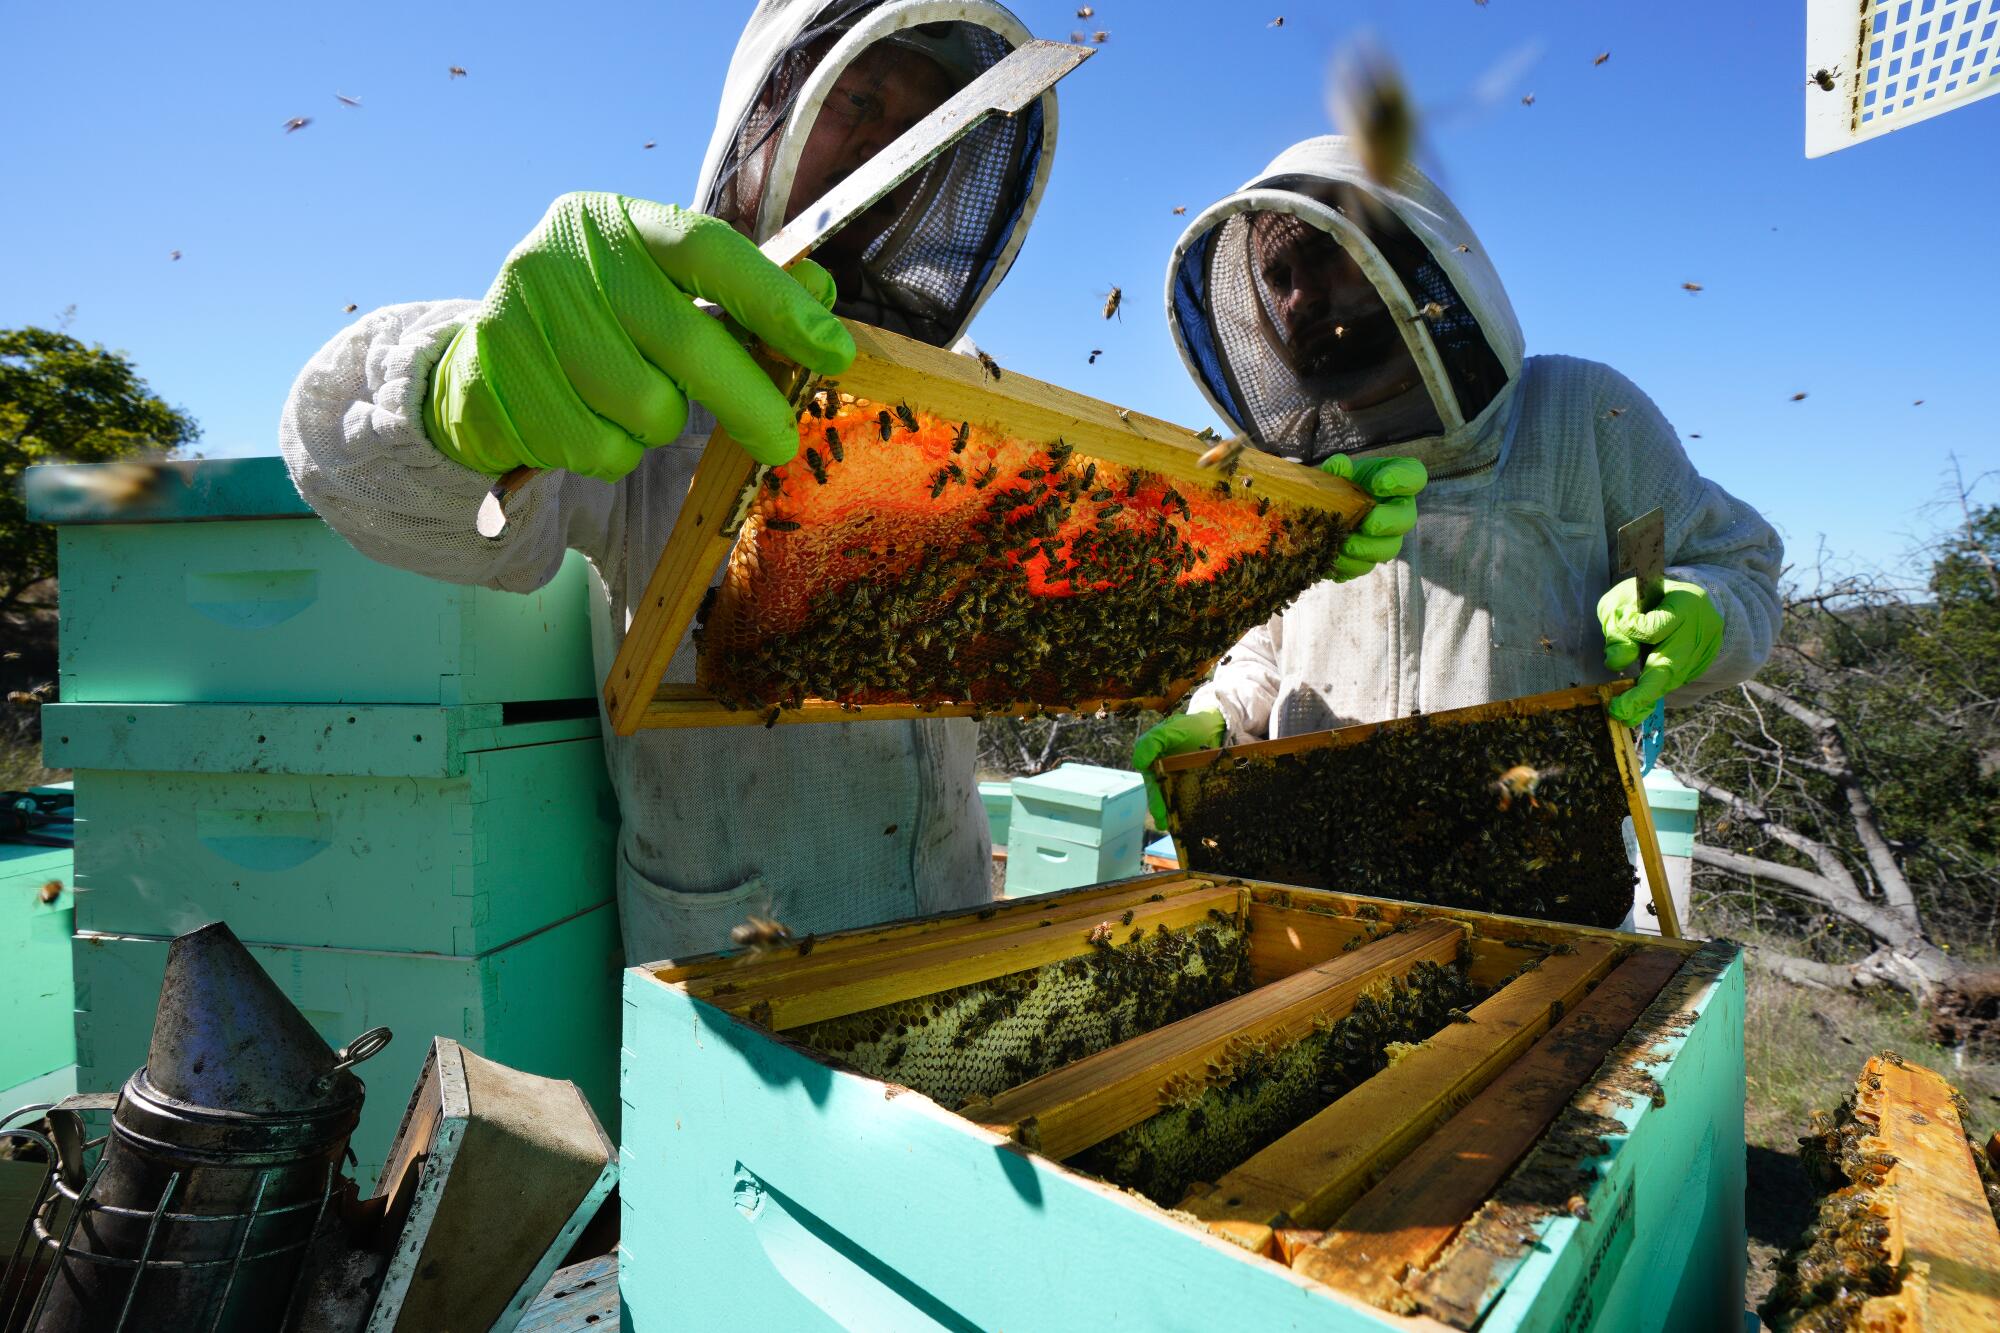 Dónde puedo comprar polen de abeja y sus beneficios? - 🐝 Venta productos  Miel